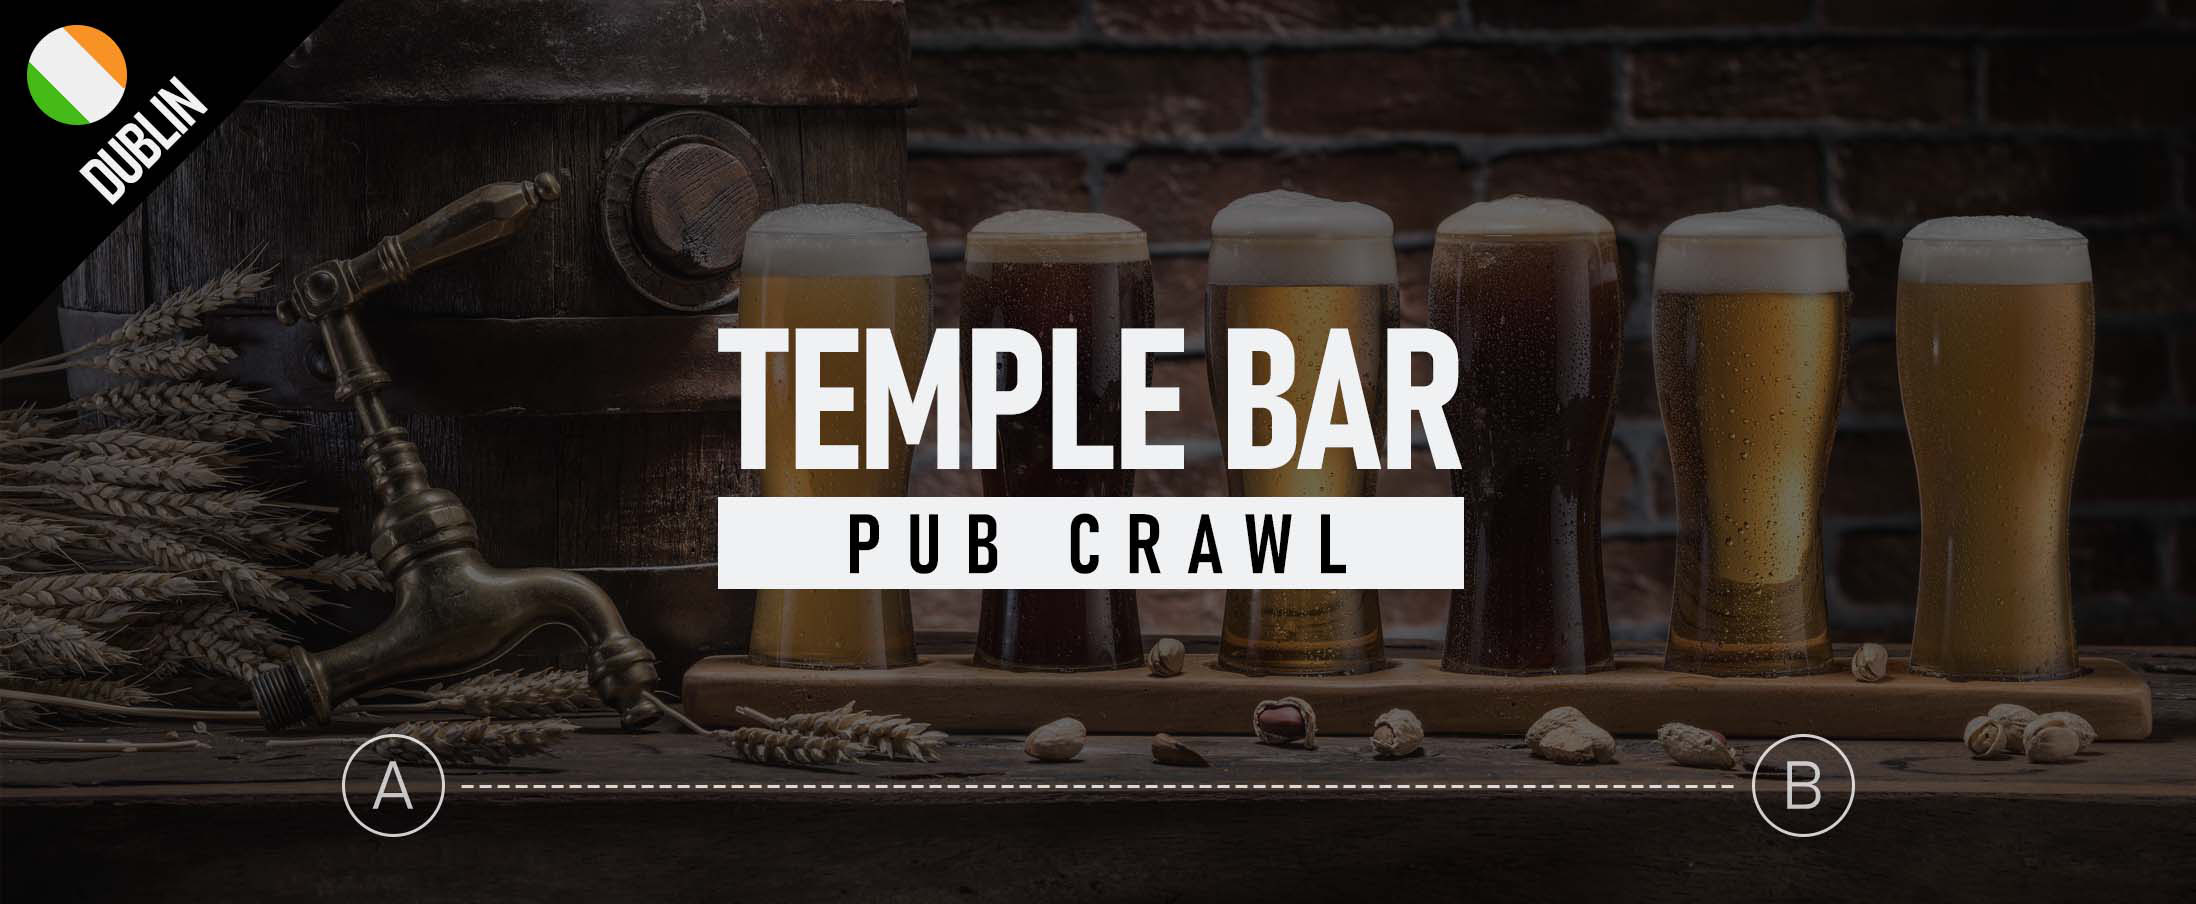 Temple Bar Pub Crawl 